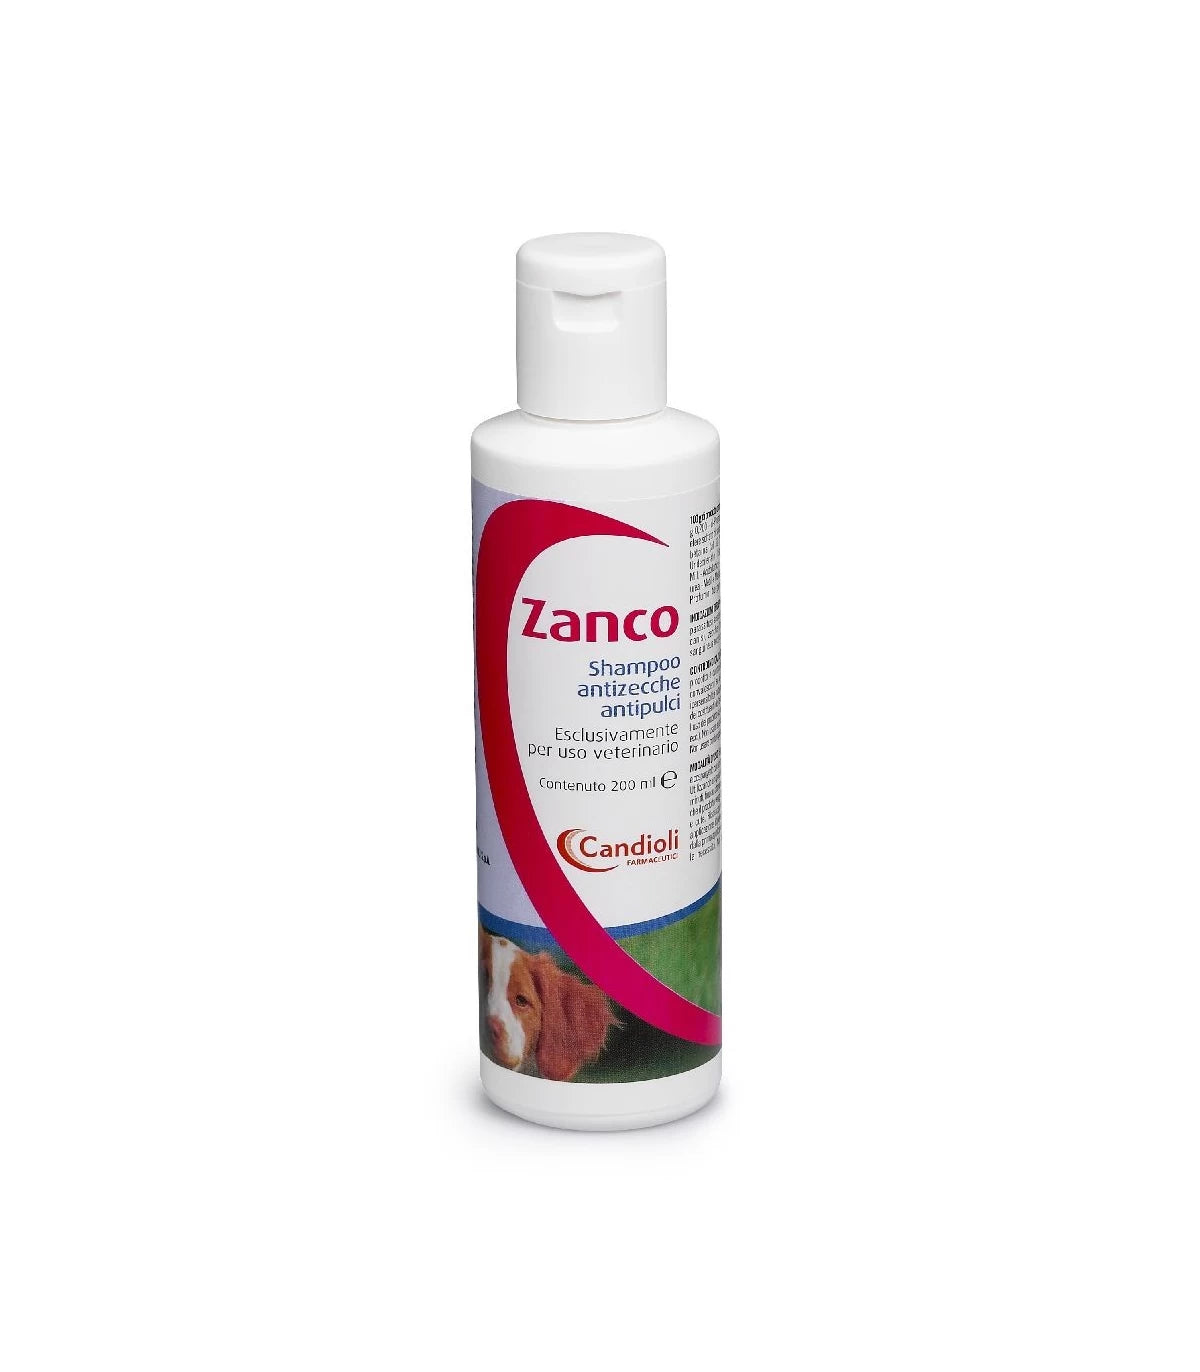 ZANCO SHAMPOO 200ml - Shampoo antiparassitario per la pulizia del cane